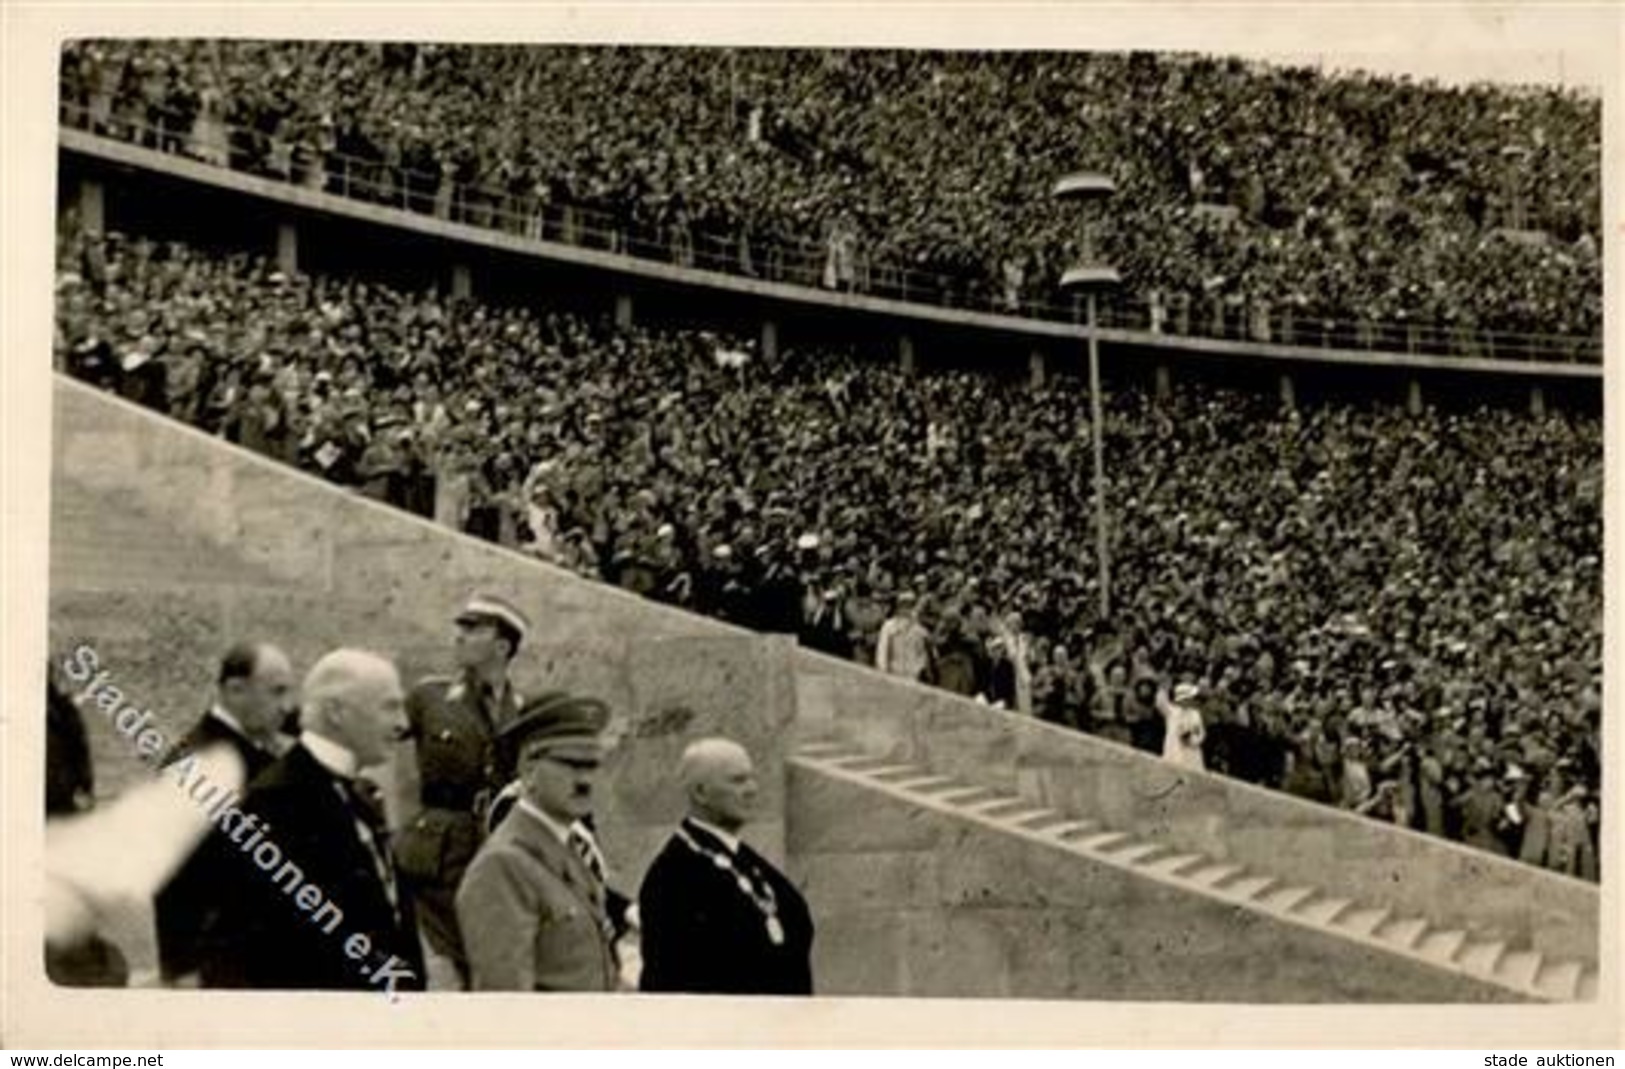 BERLIN OLYMPIA 1936 WK II - Seltene Foto-Ak Mit HITLER (Eröffnung) I-II - Olympische Spiele